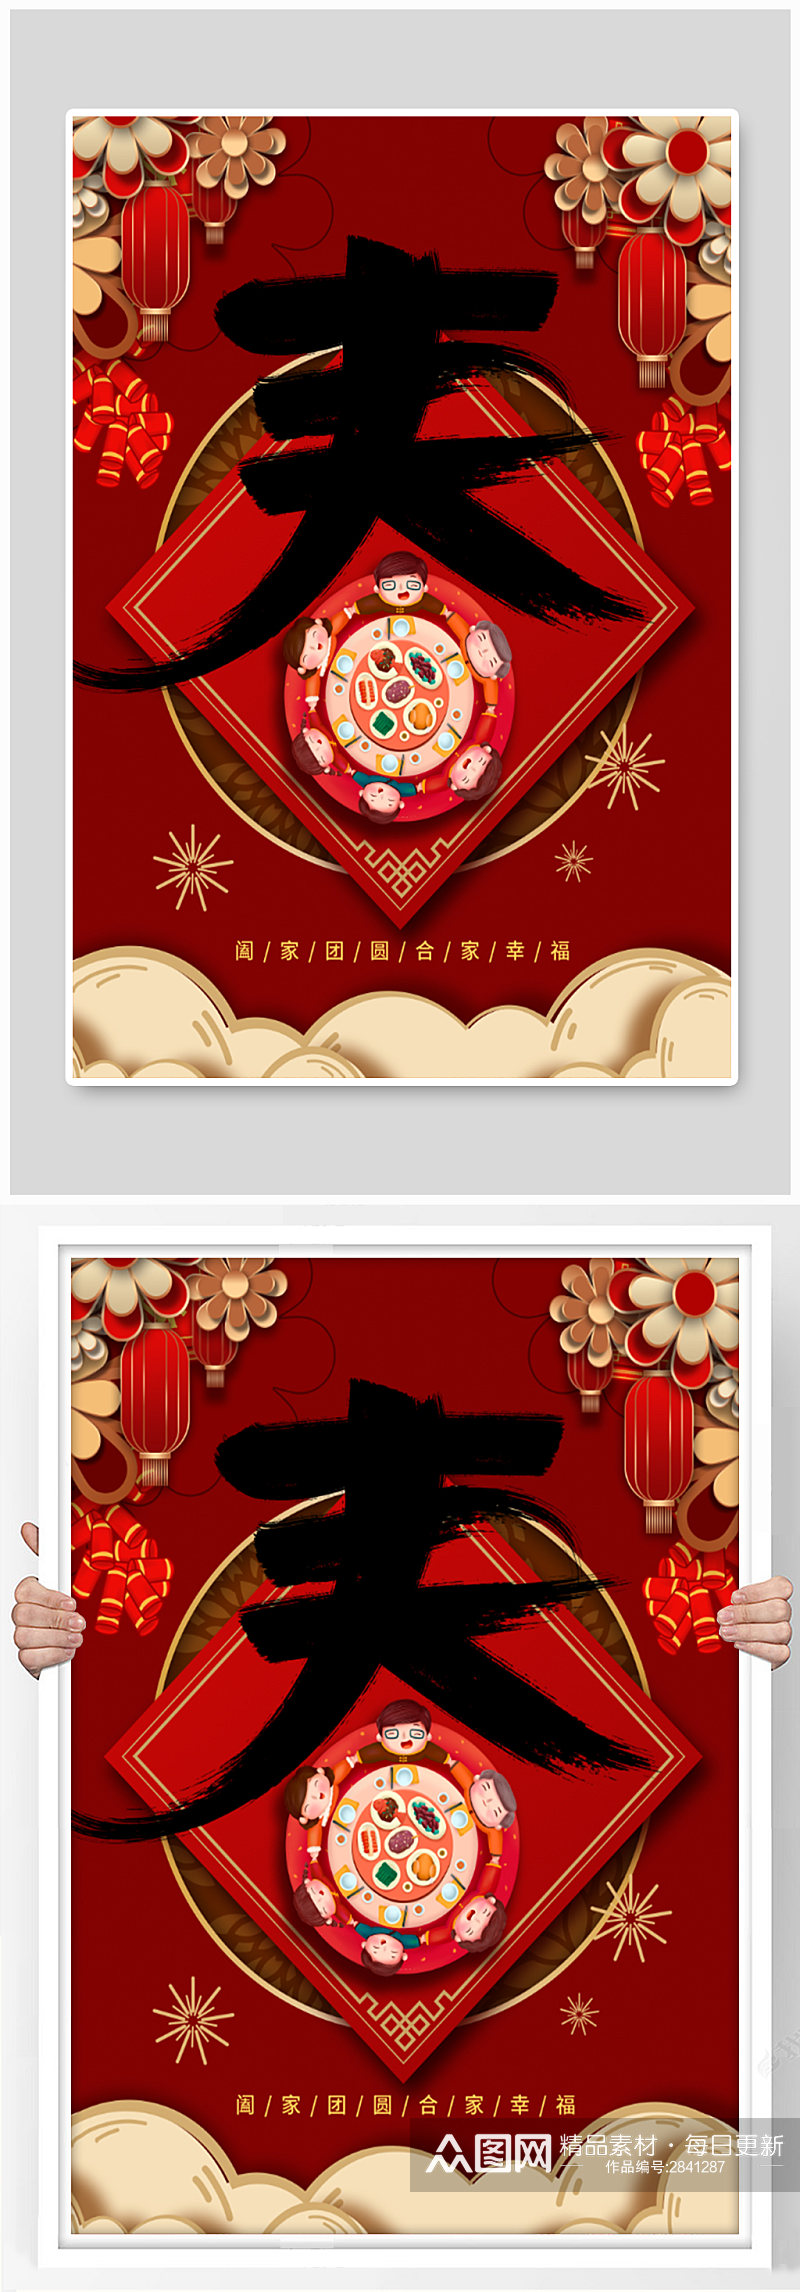 春节阖家团圆红色海报素材